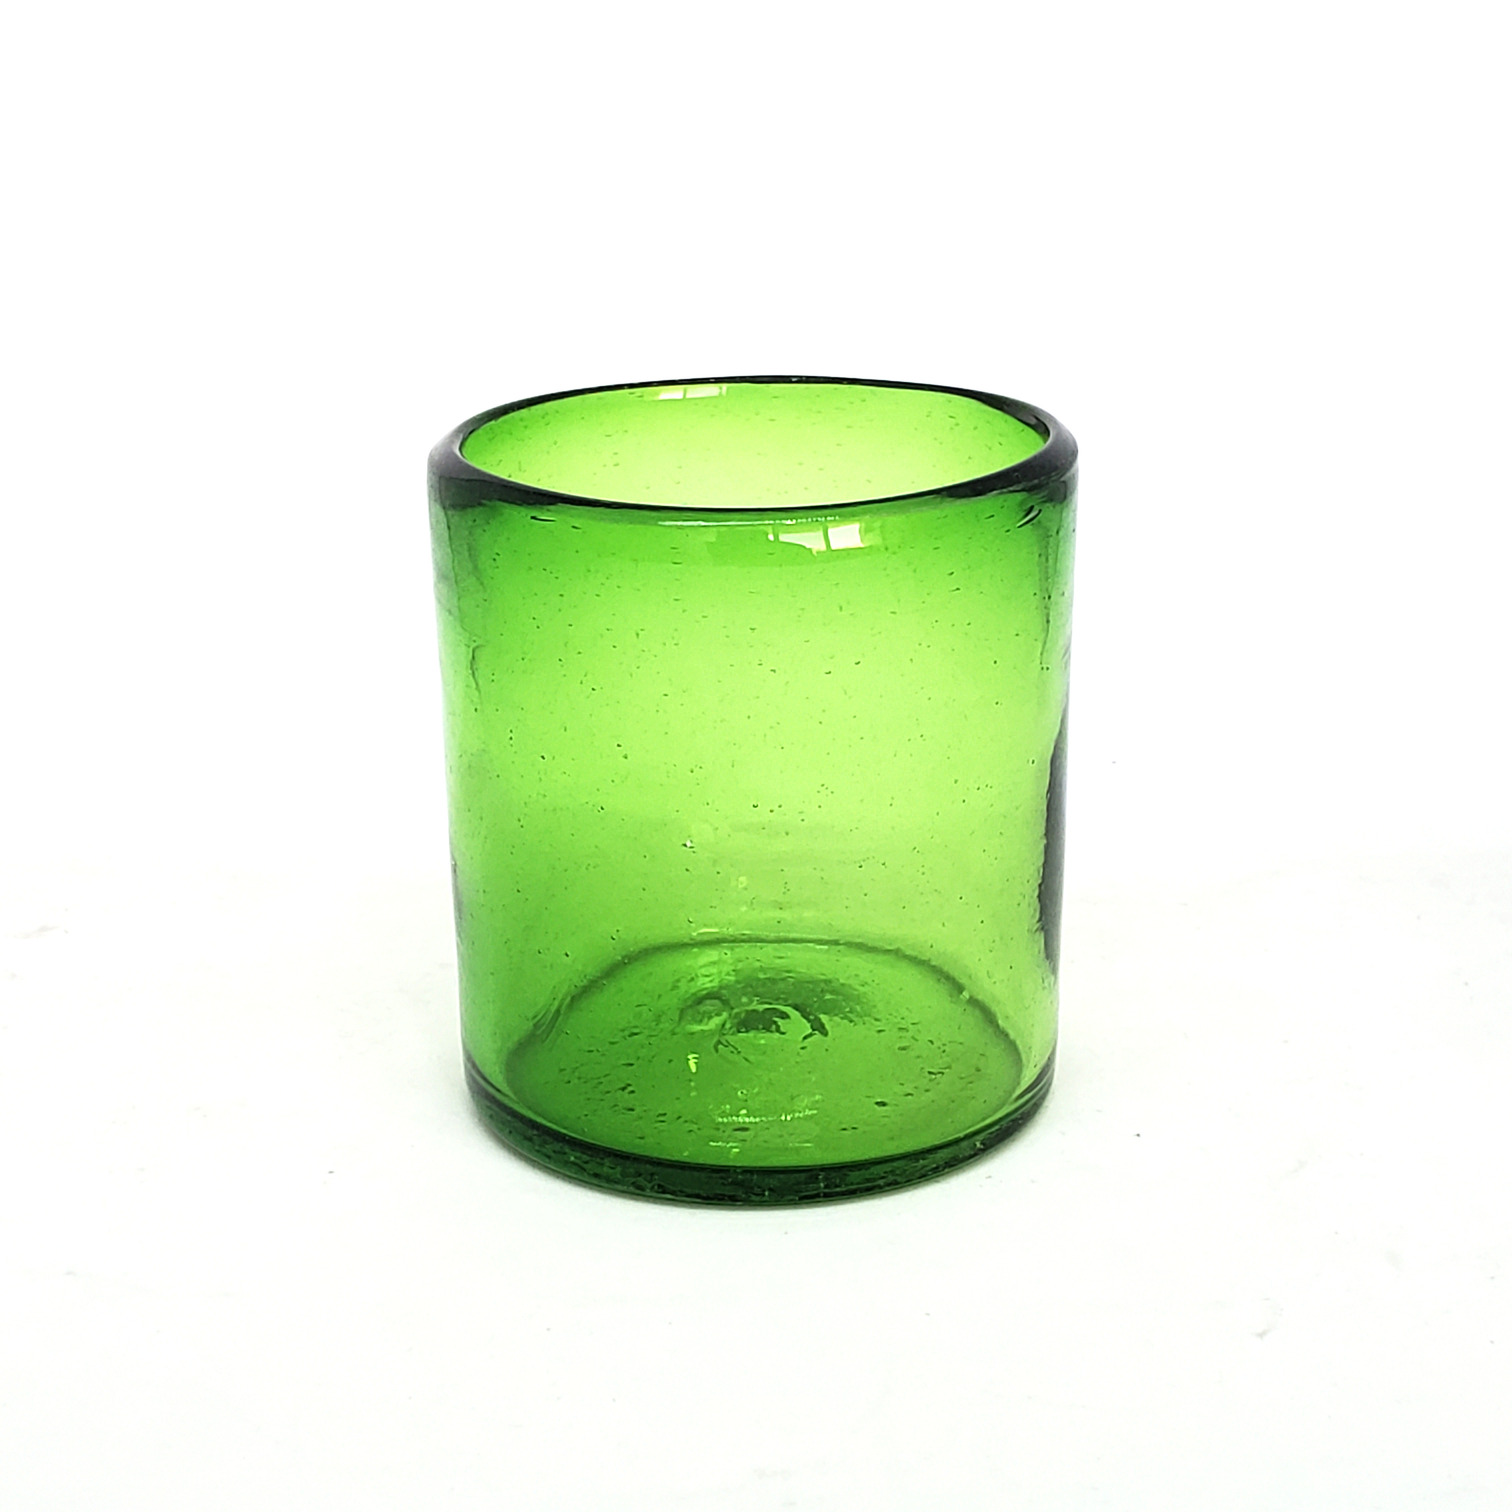 Colores Solidos / Vasos chicos 9 oz color Verde Esmeralda Sólido (set de 6) / Éstos artesanales vasos le darán un toque colorido a su bebida favorita.